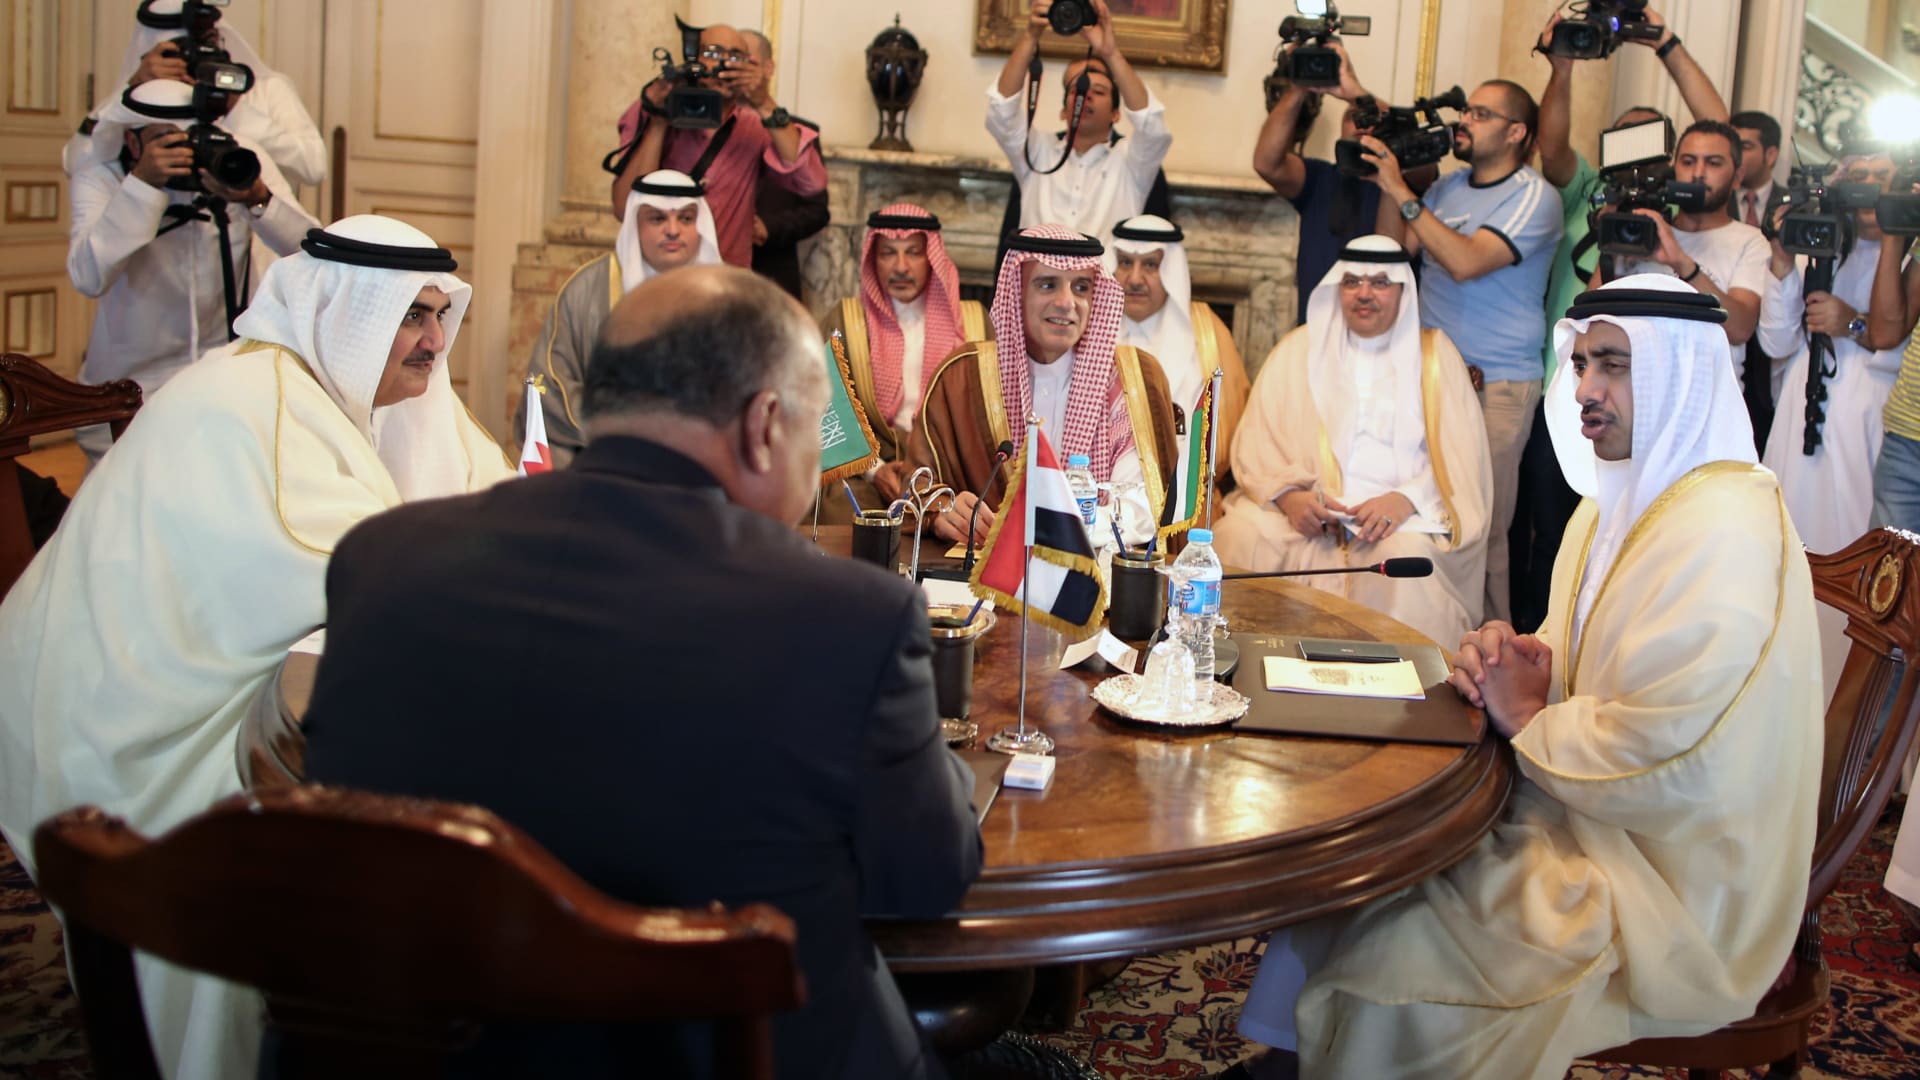 وزير الخارجية السعودي: مُتفائل باقترابنا من اتفاق مرضي لأطراف الأزمة الخليجية